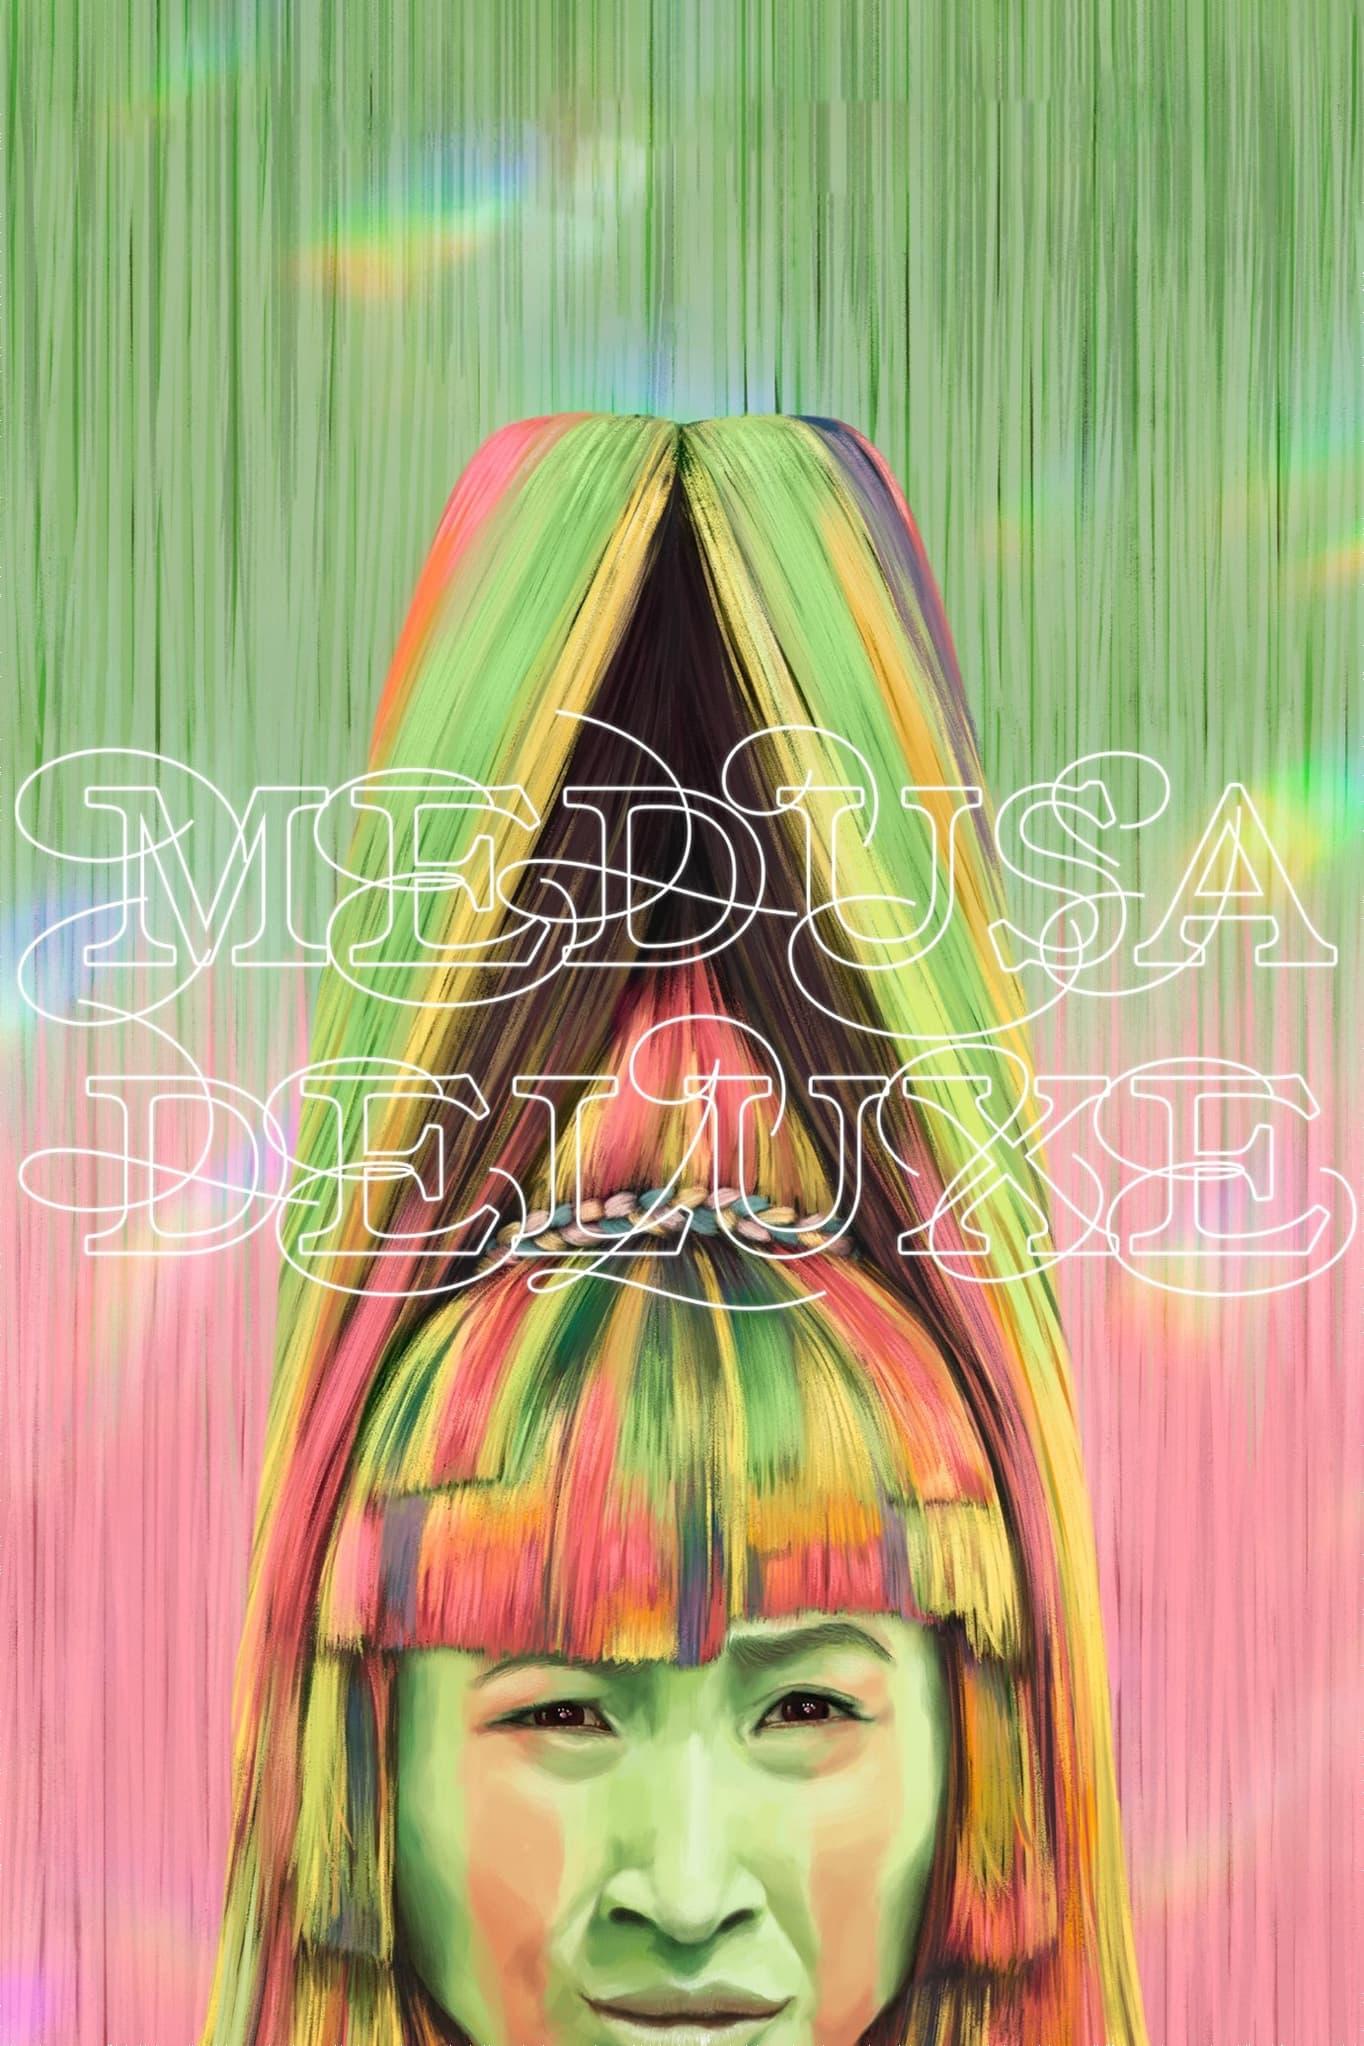 Medusa Deluxe poster